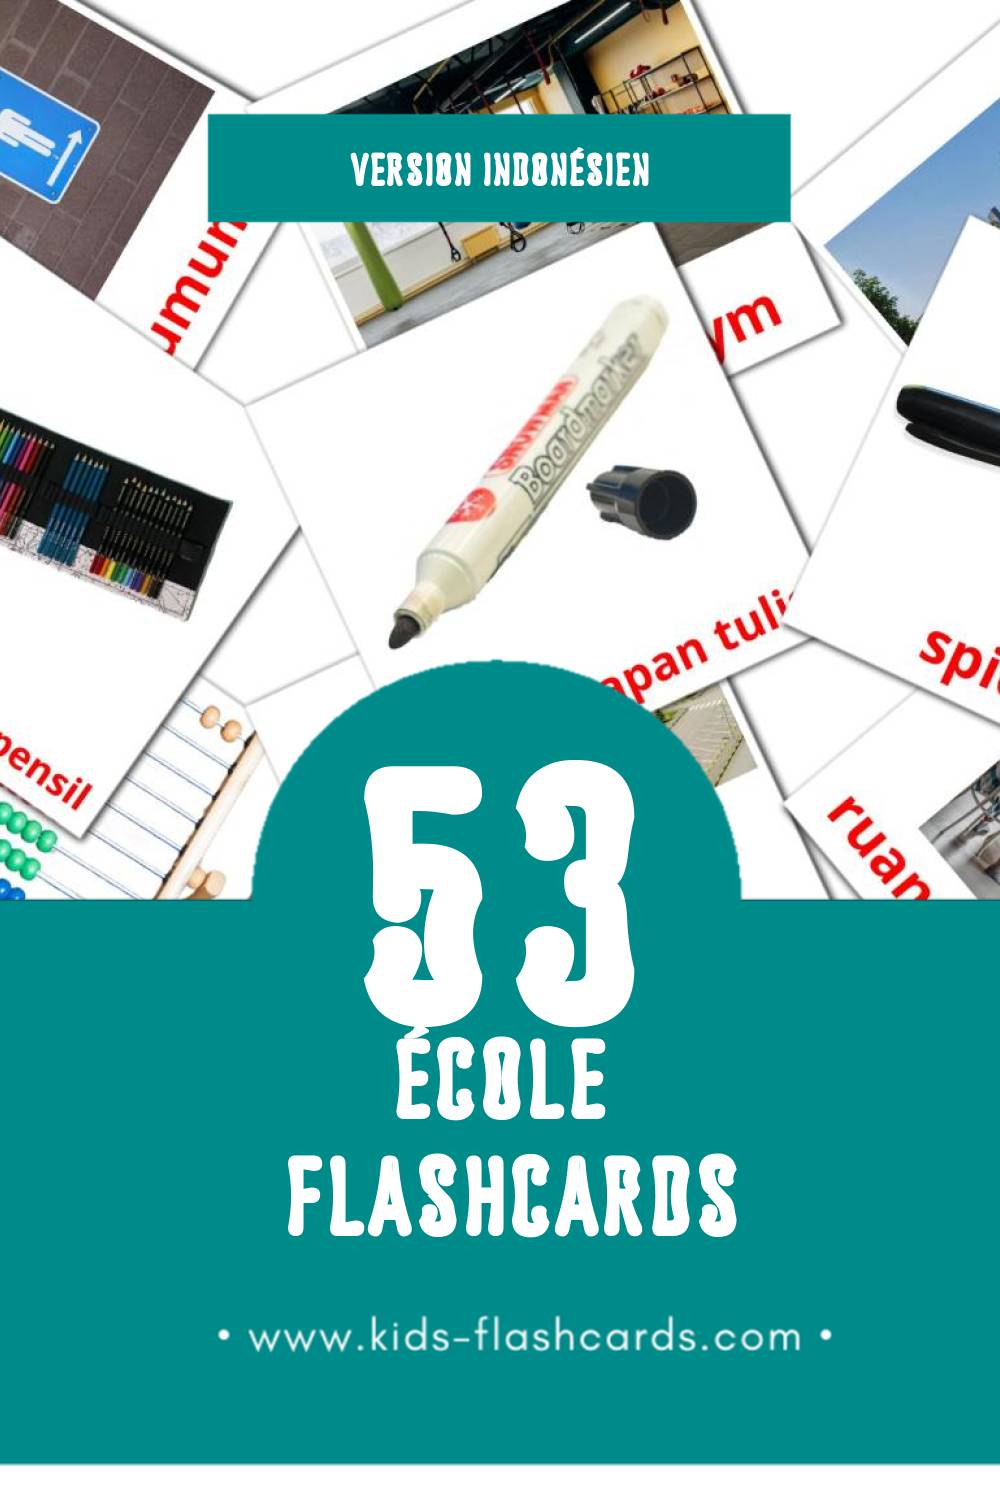 Flashcards Visual Sekolah pour les tout-petits (53 cartes en Indonésien)